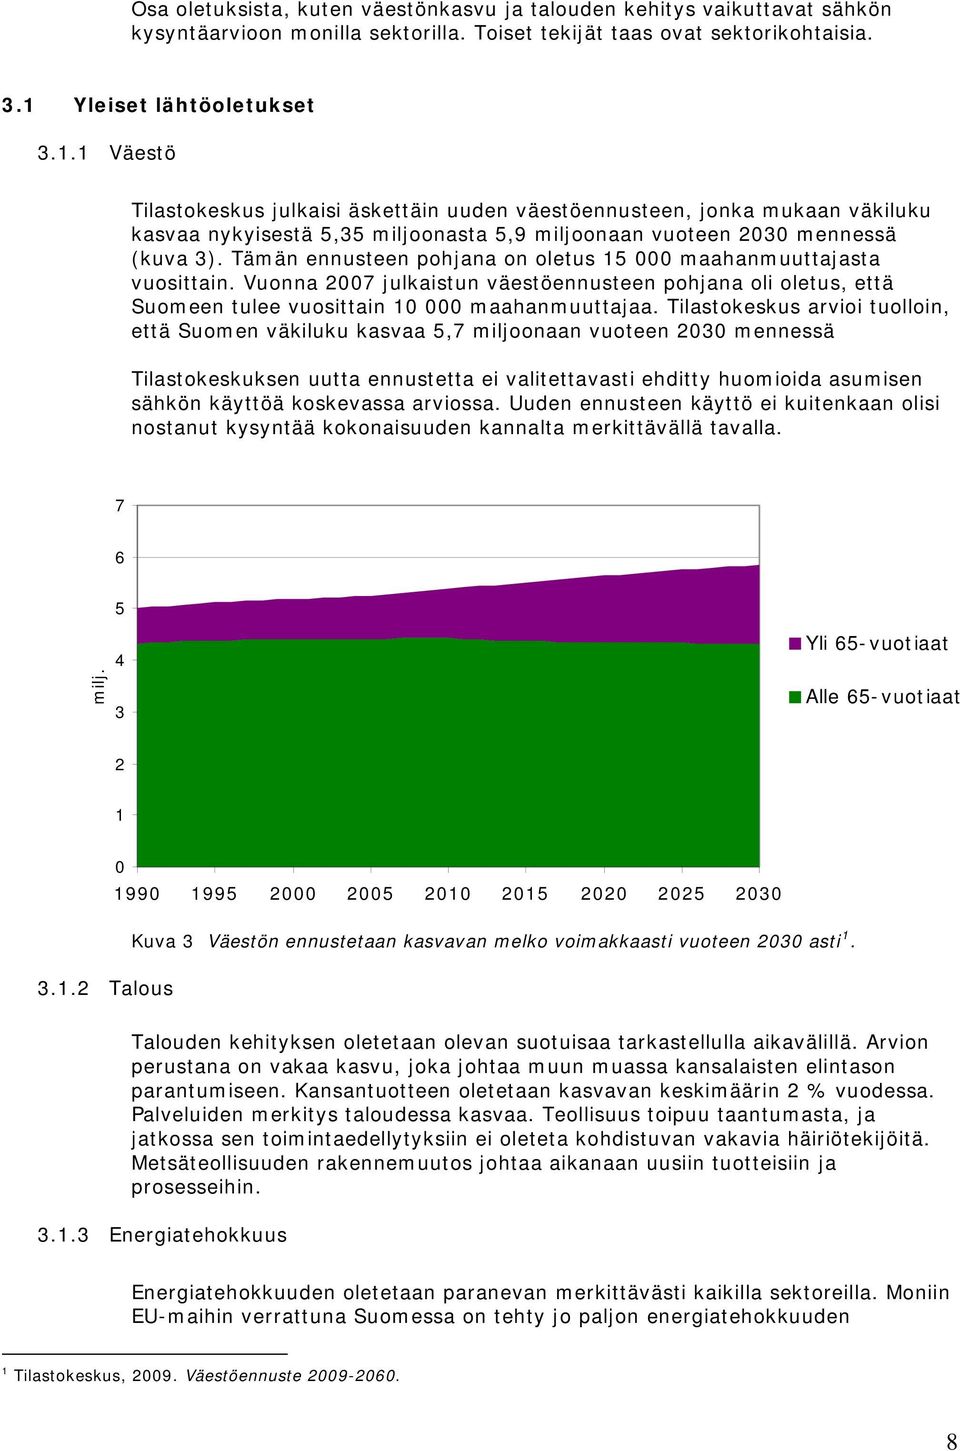 Tämän ennusteen pohjana on oletus 15 000 maahanmuuttajasta vuosittain. Vuonna 2007 julkaistun väestöennusteen pohjana oli oletus, että Suomeen tulee vuosittain 10 000 maahanmuuttajaa.